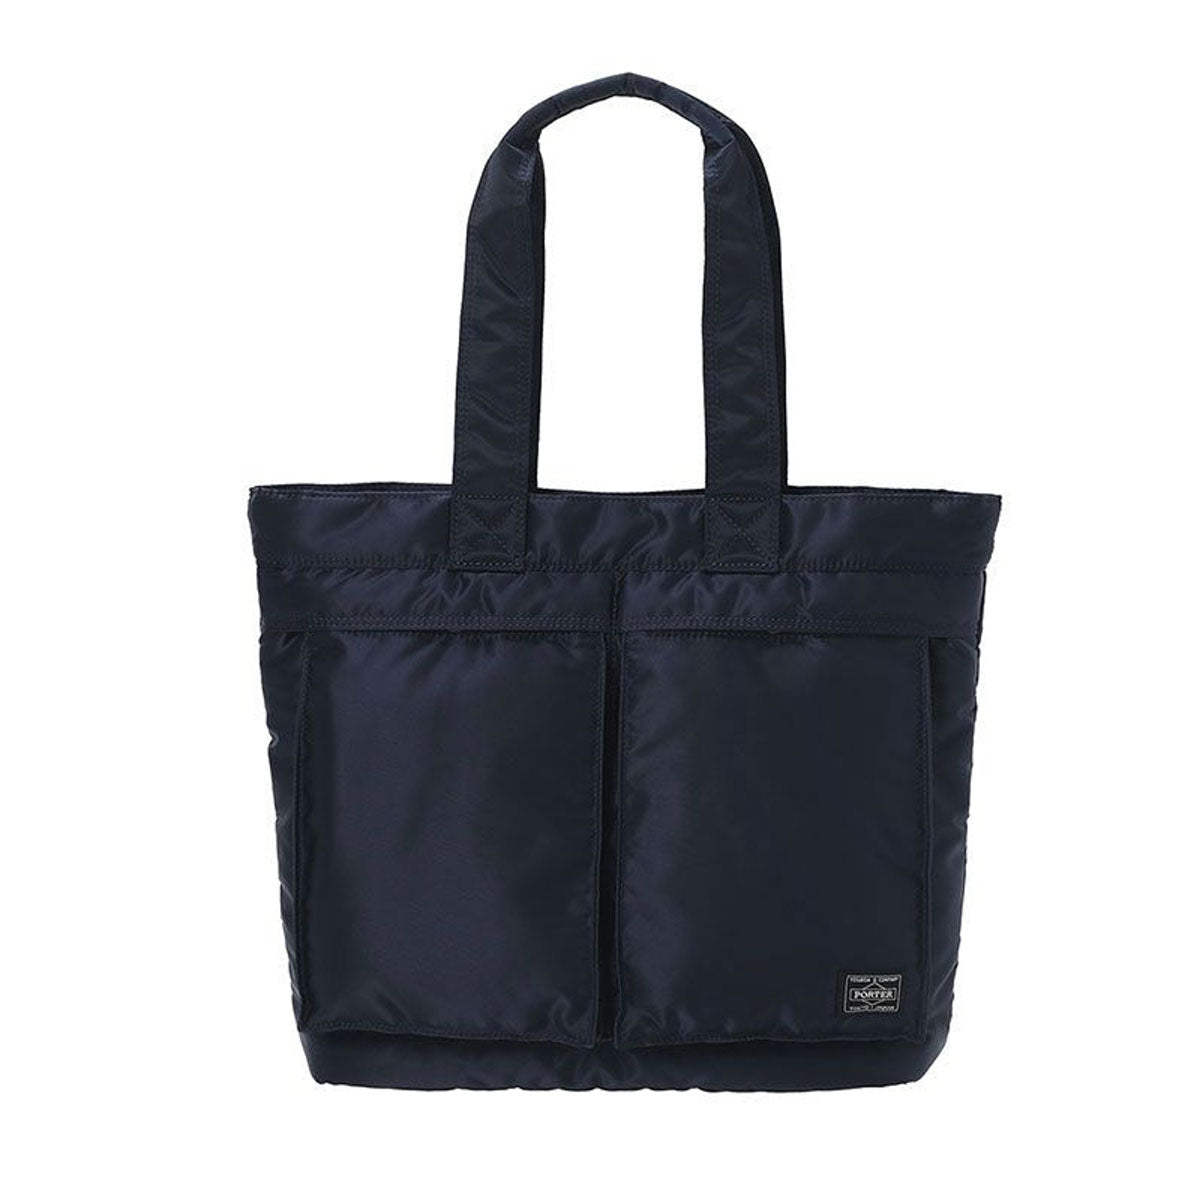 porter-yoshida & co. tanker tote bag (navy)